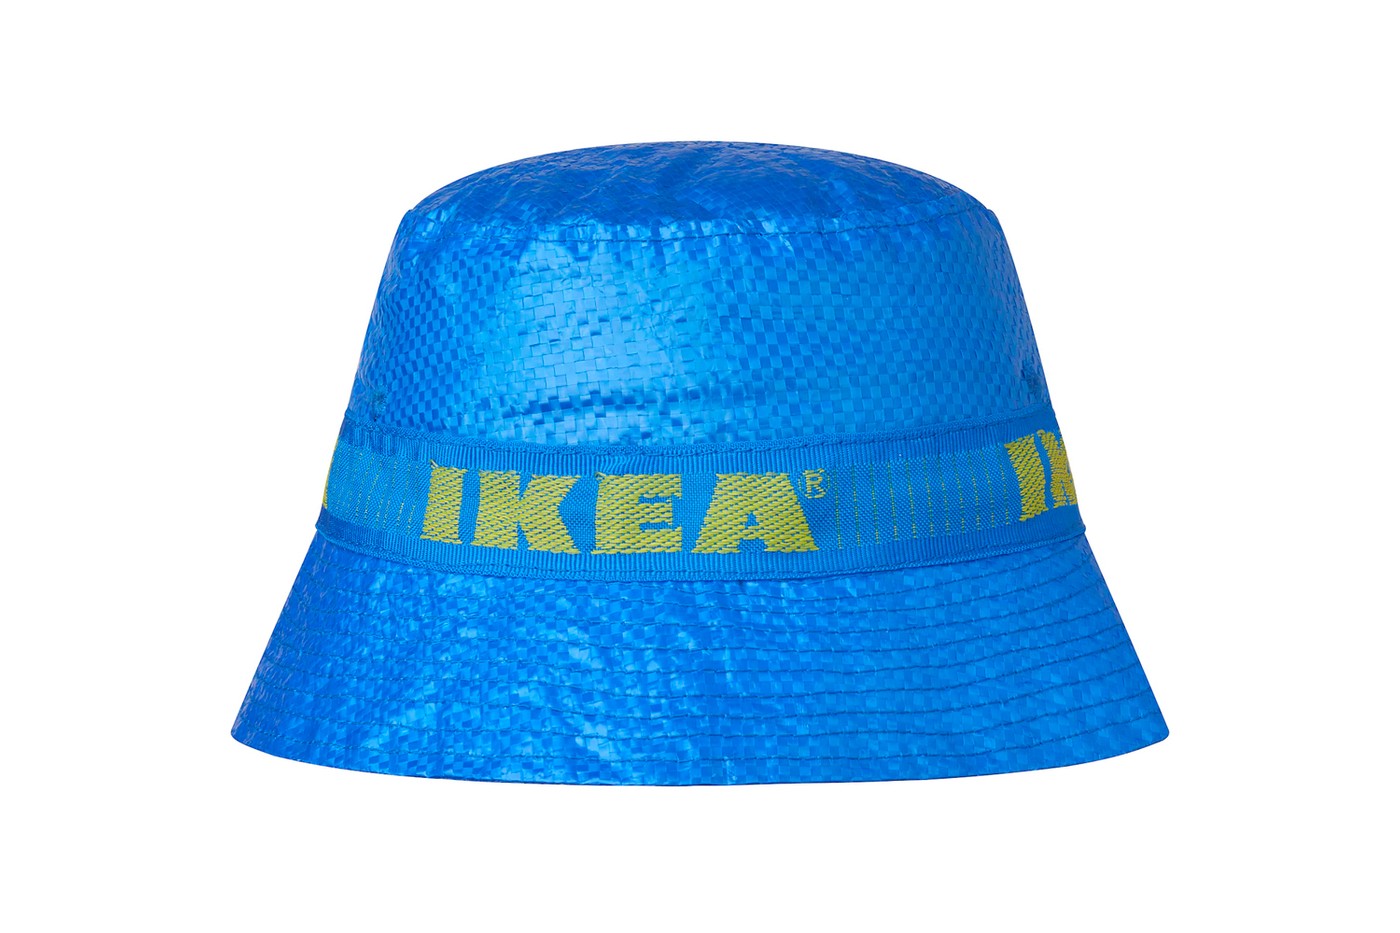 官方发售 $3.99 美金 − IKEA 正式推出「KNORVA」渔夫帽款